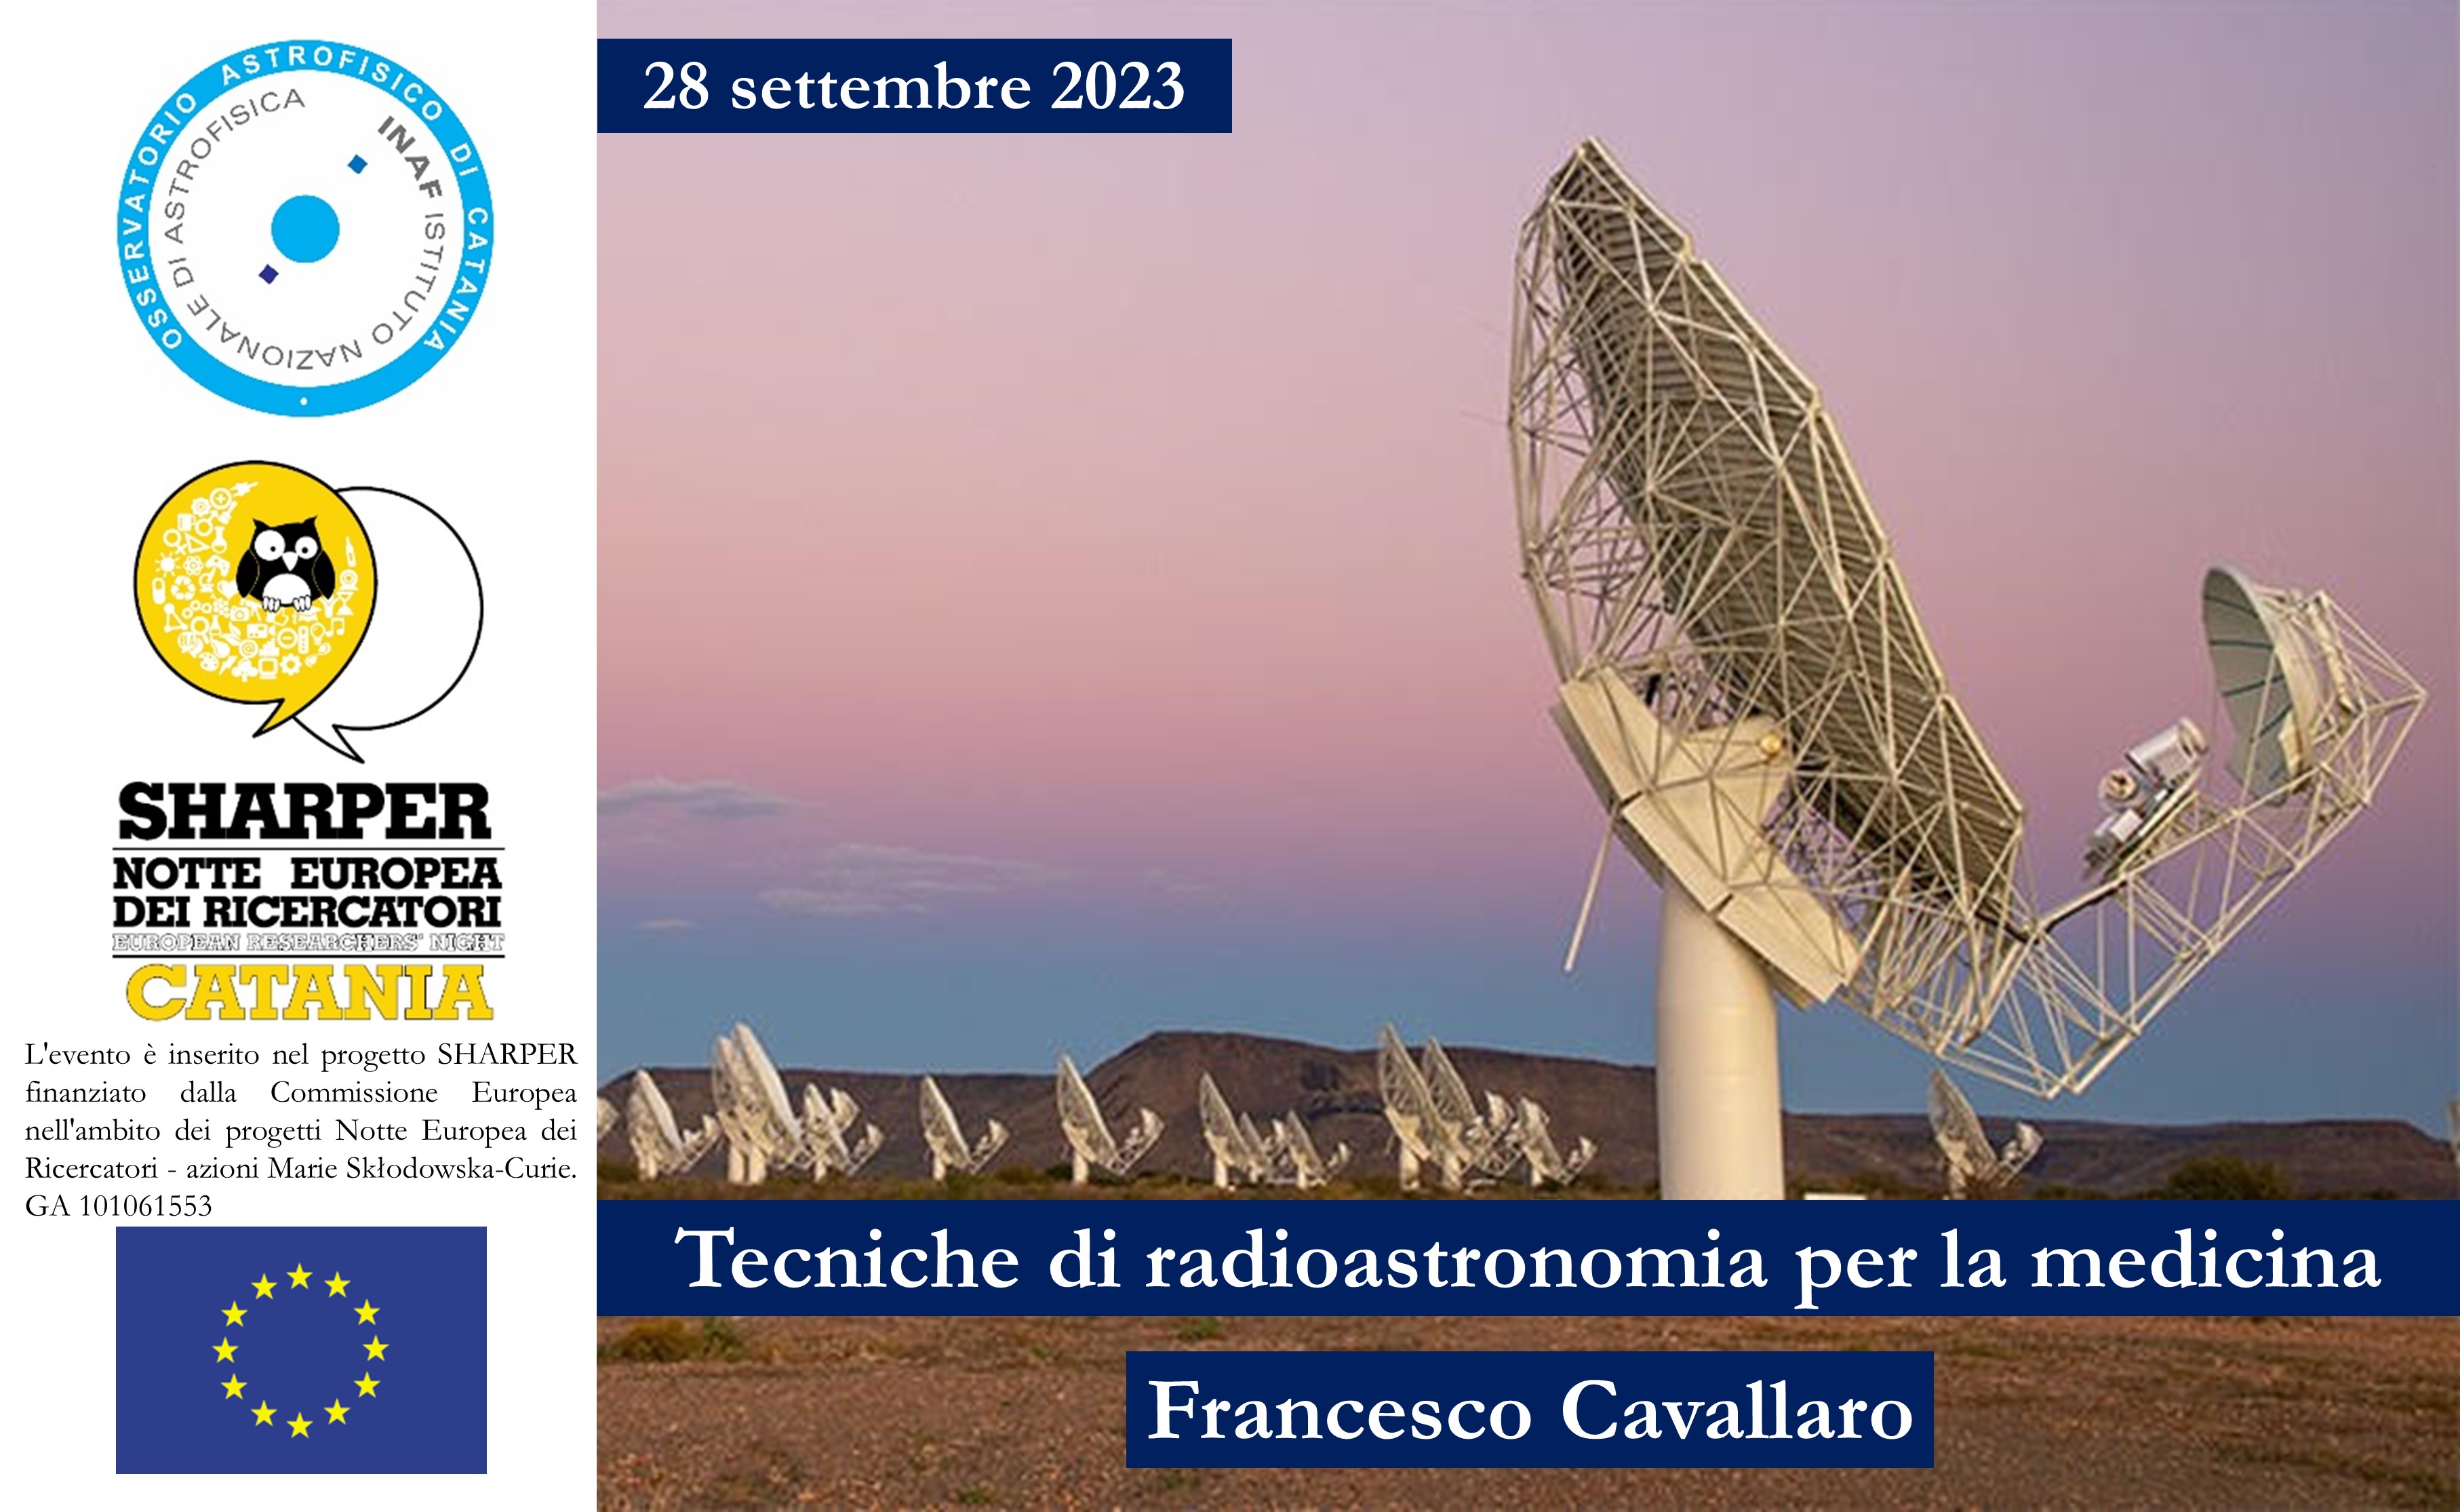 INAF- Osservatorio Astrofisico di Catania